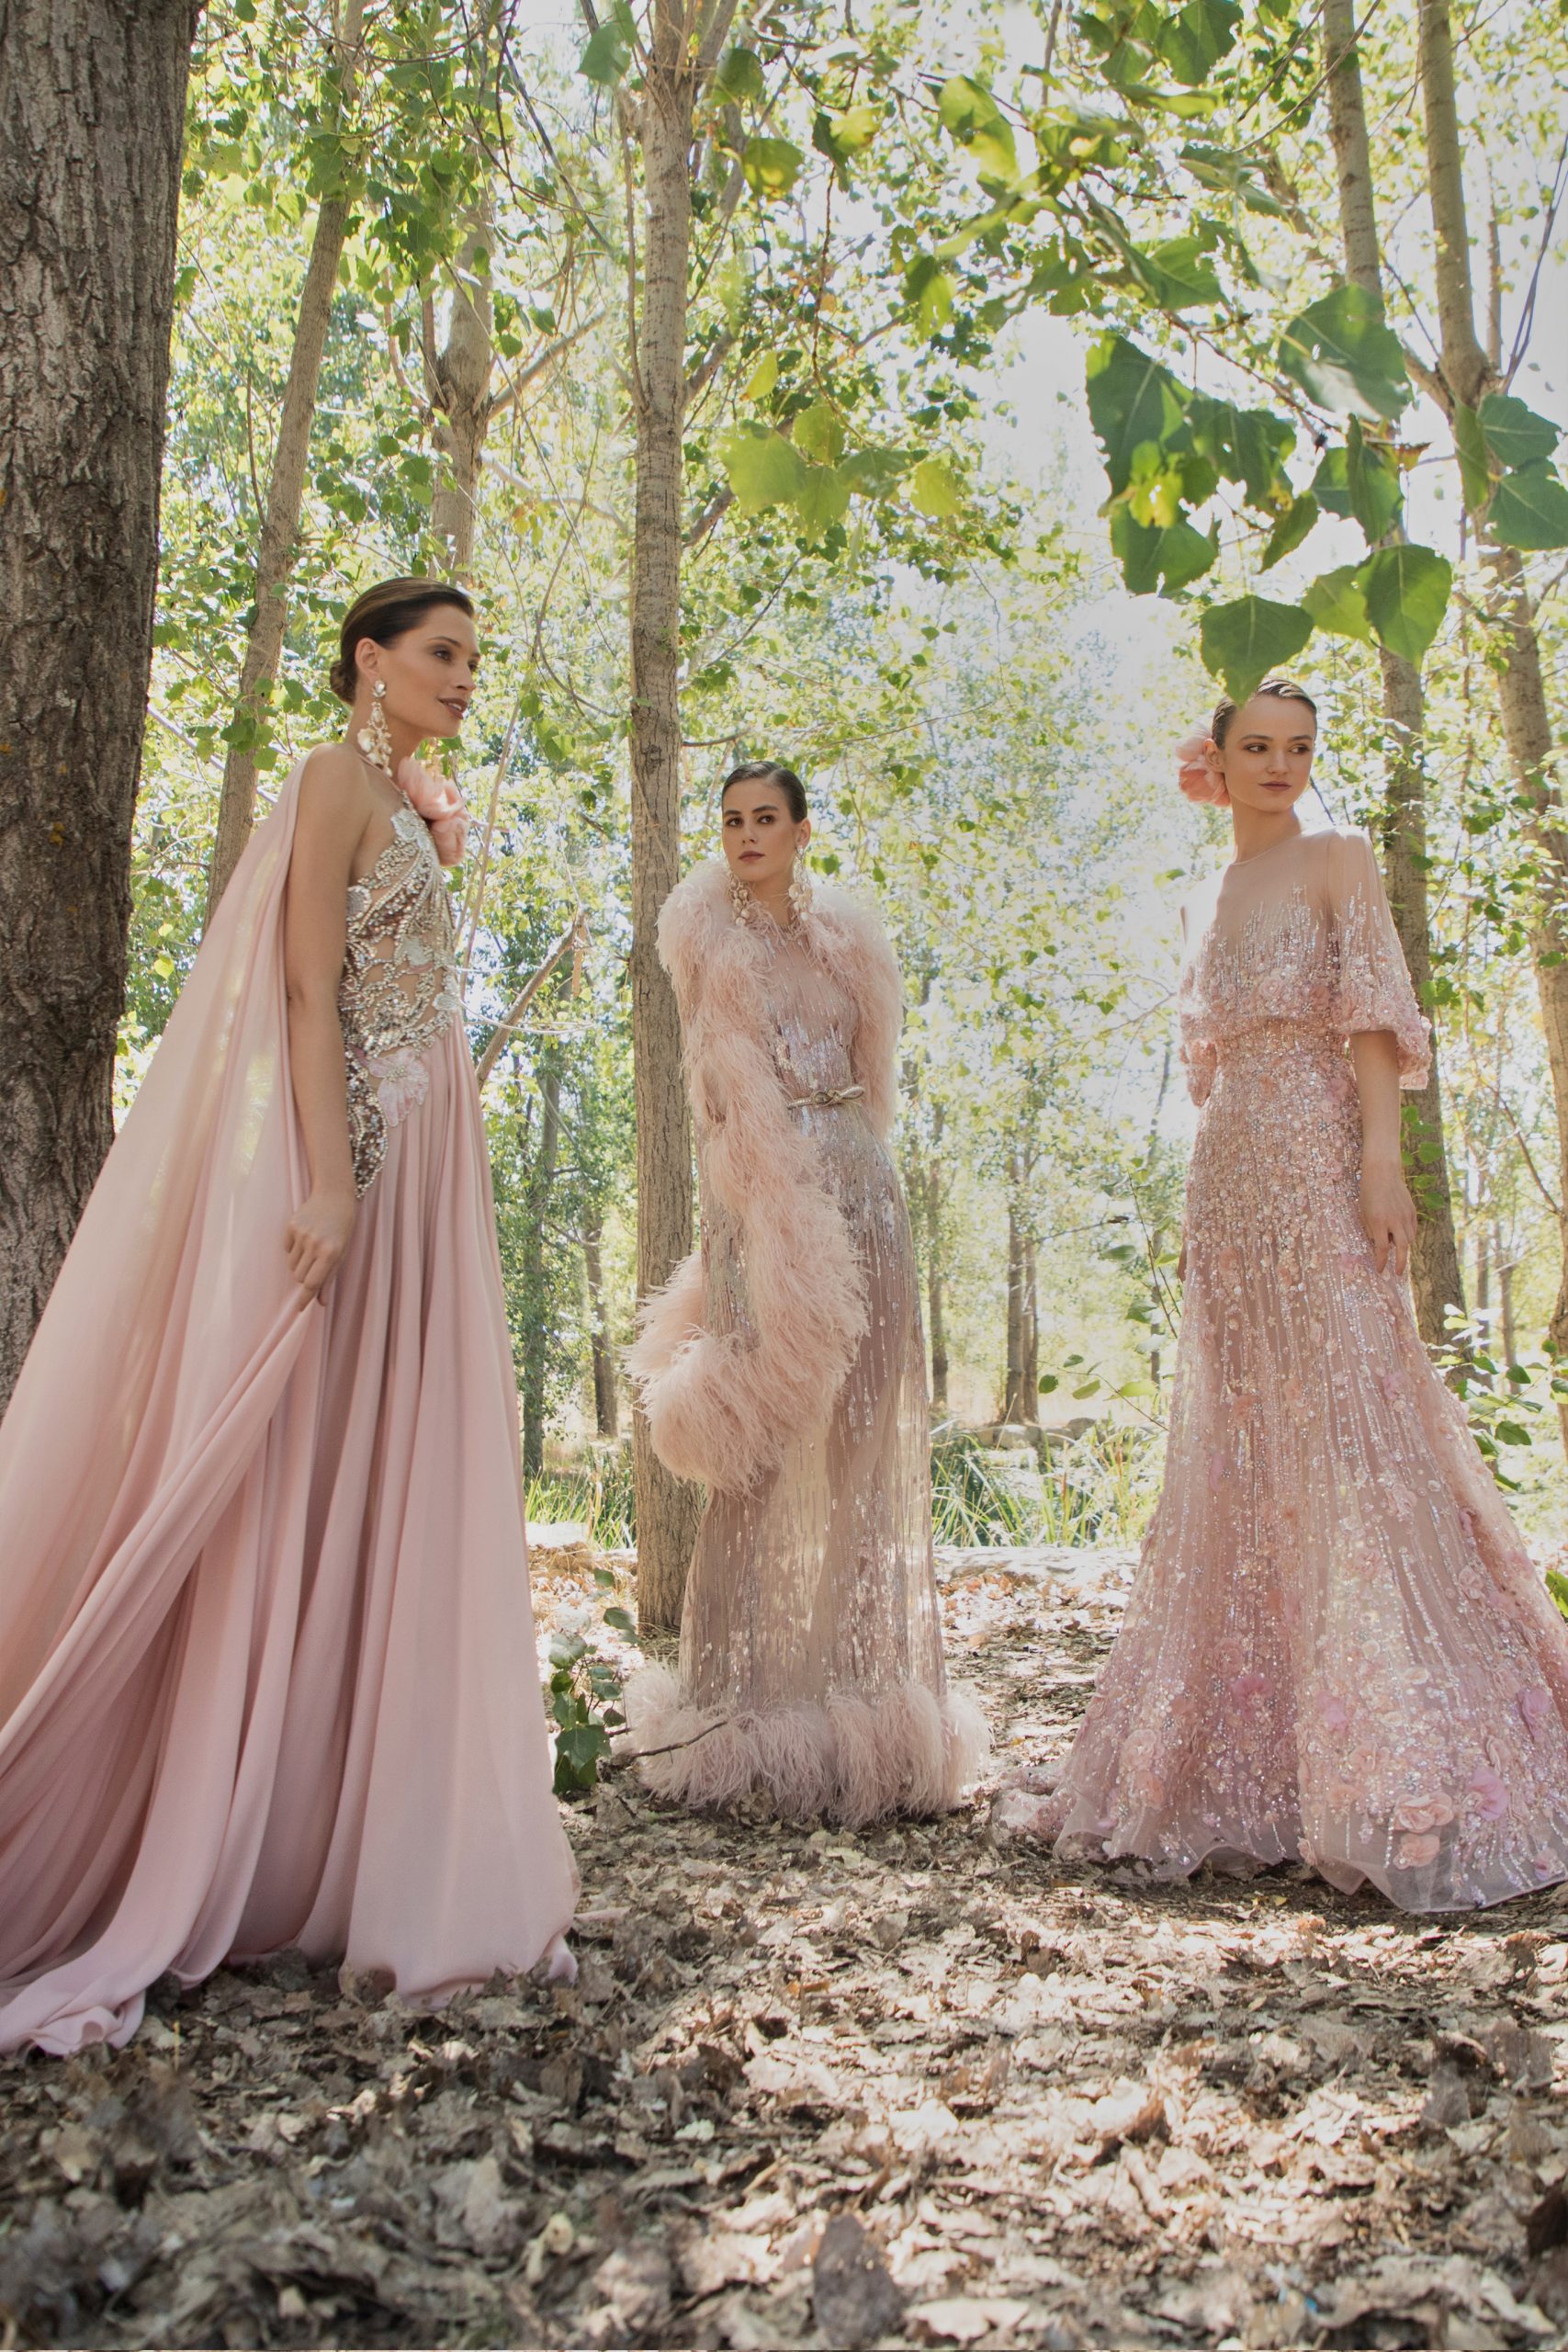 Город надежды: волшебная коллекция Elie Saab haute couture, посвященная Бейруту